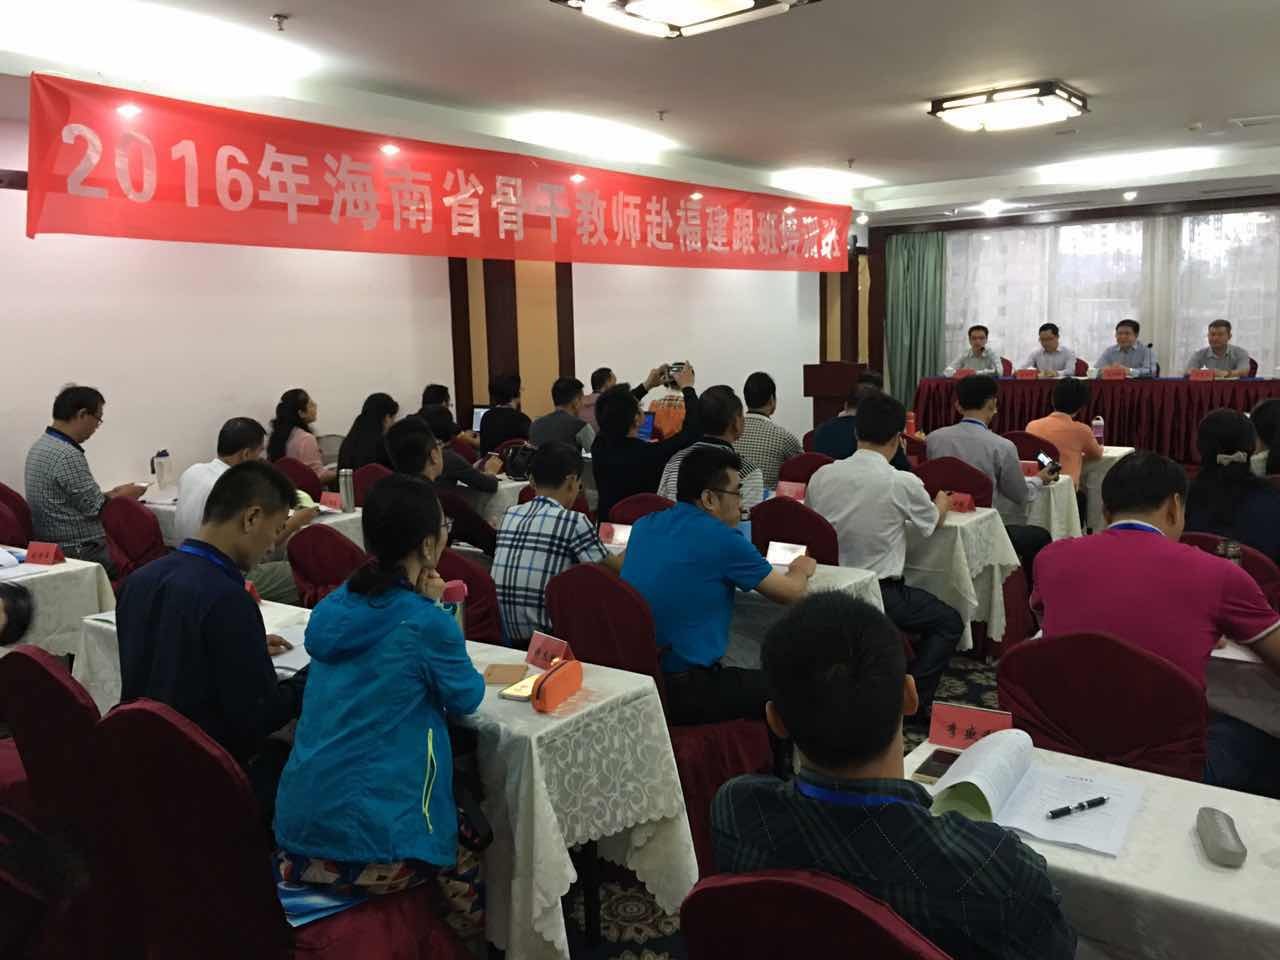 2016年海南省骨干教師赴福建跟班培訓項目順利開班